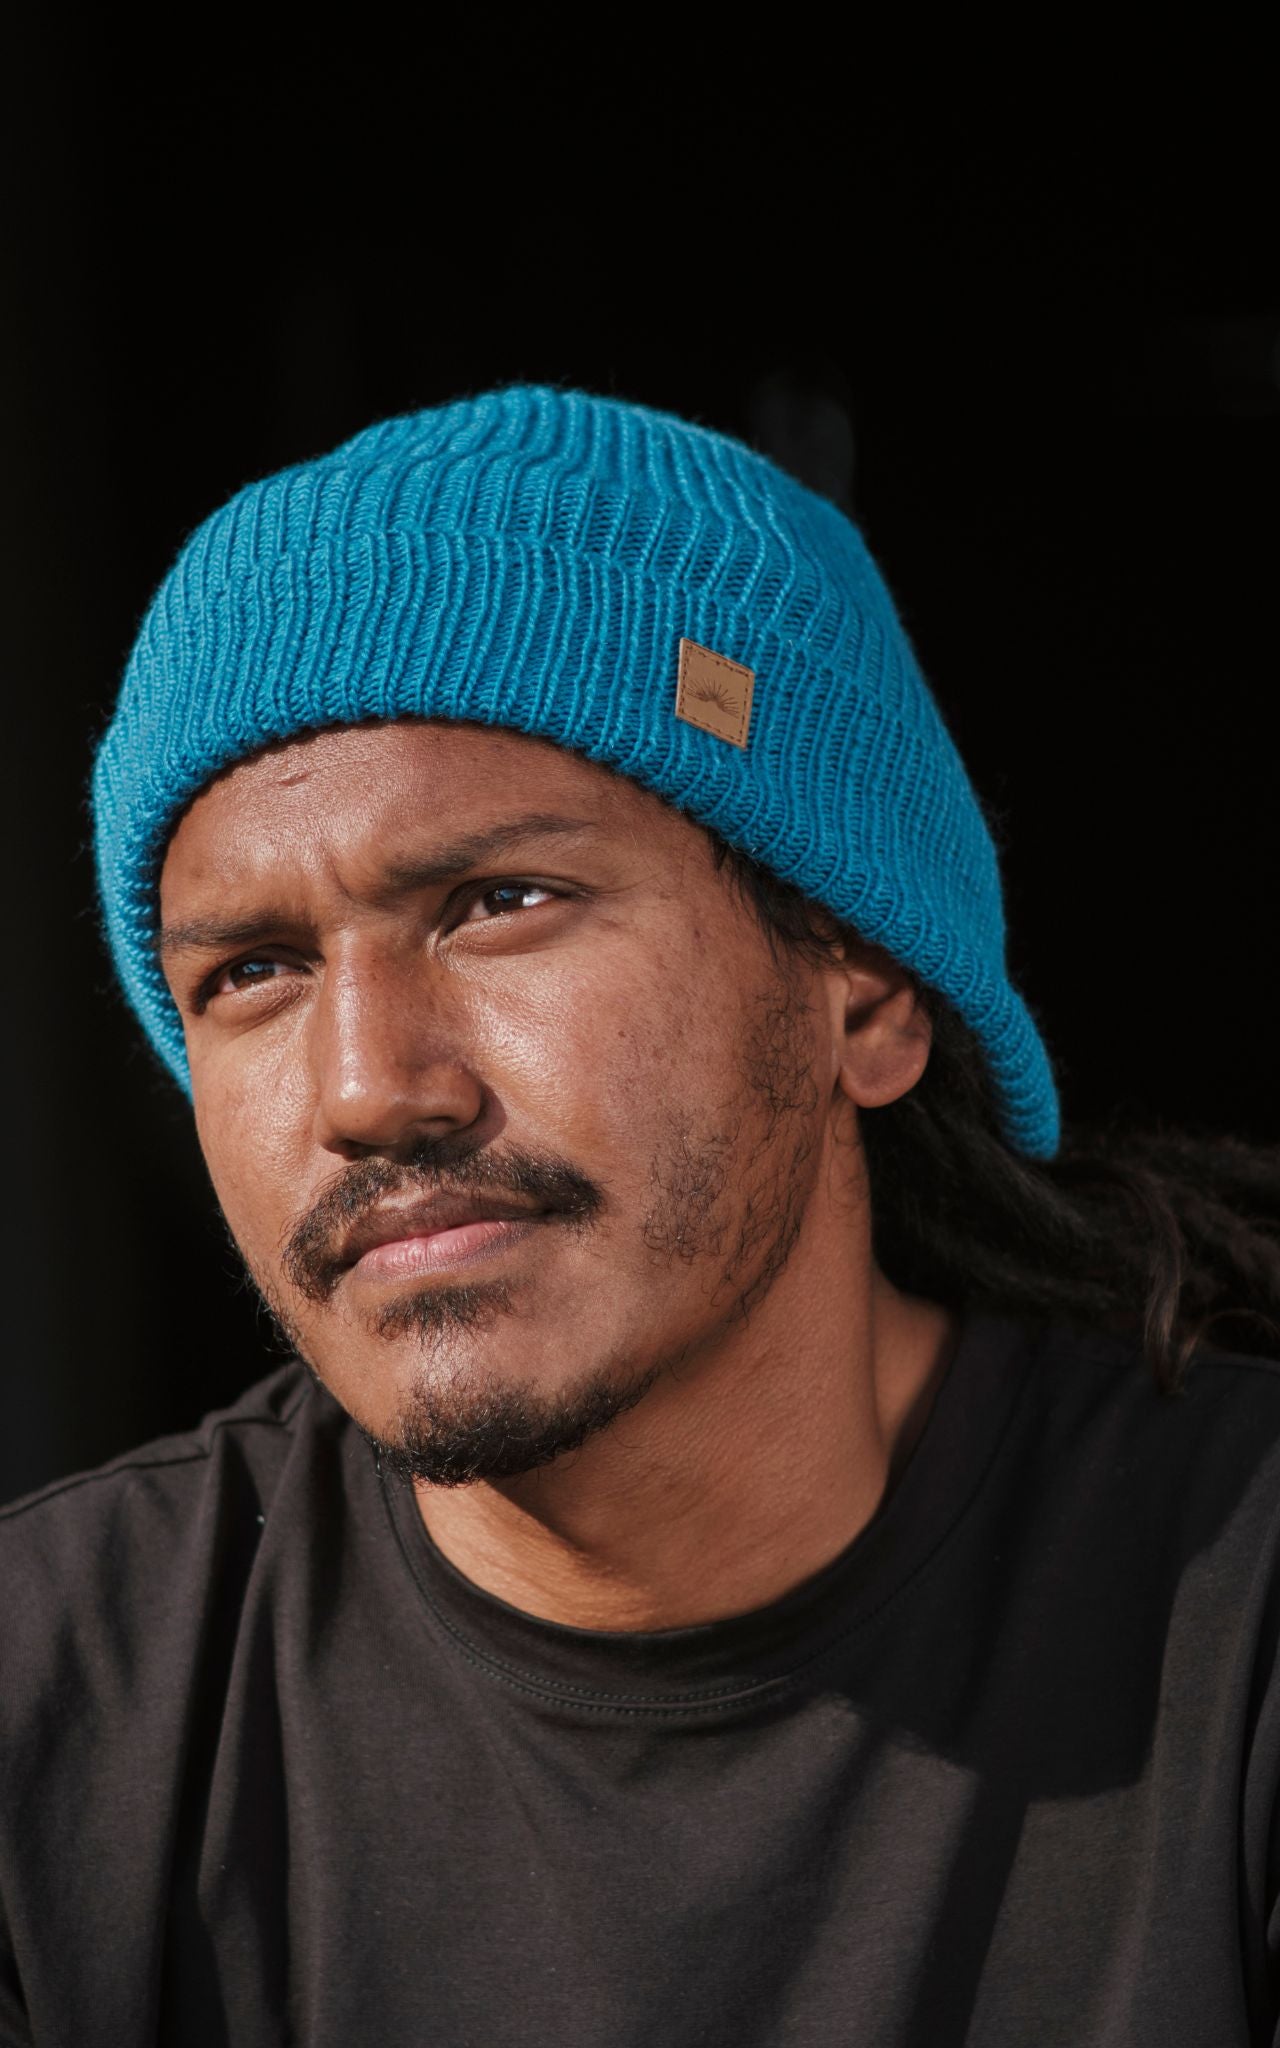 Surya Australia Merino Wool 'Fisherman' Beanie for men made in Nepal - blue